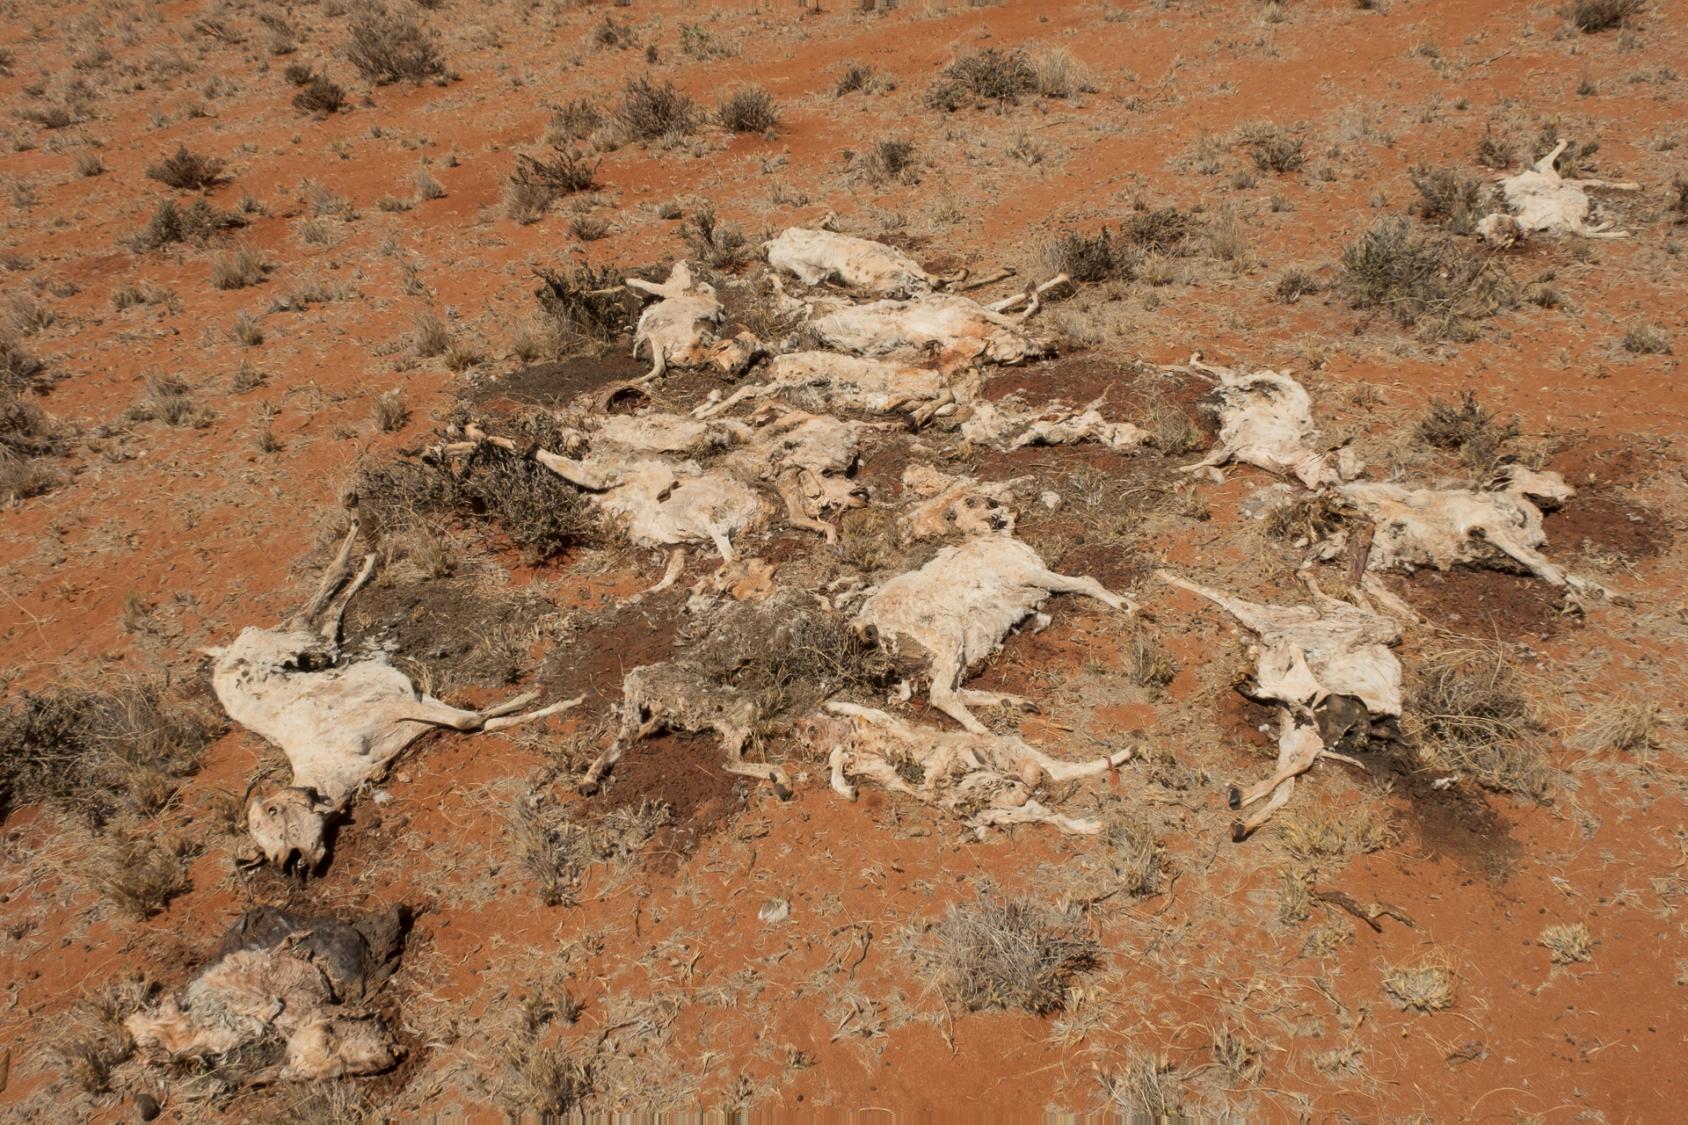 Un rebaño de camellos muertos por inanición fue fotografiado en una zona rural de Galmudug, Somaila, en febrero de 2022.